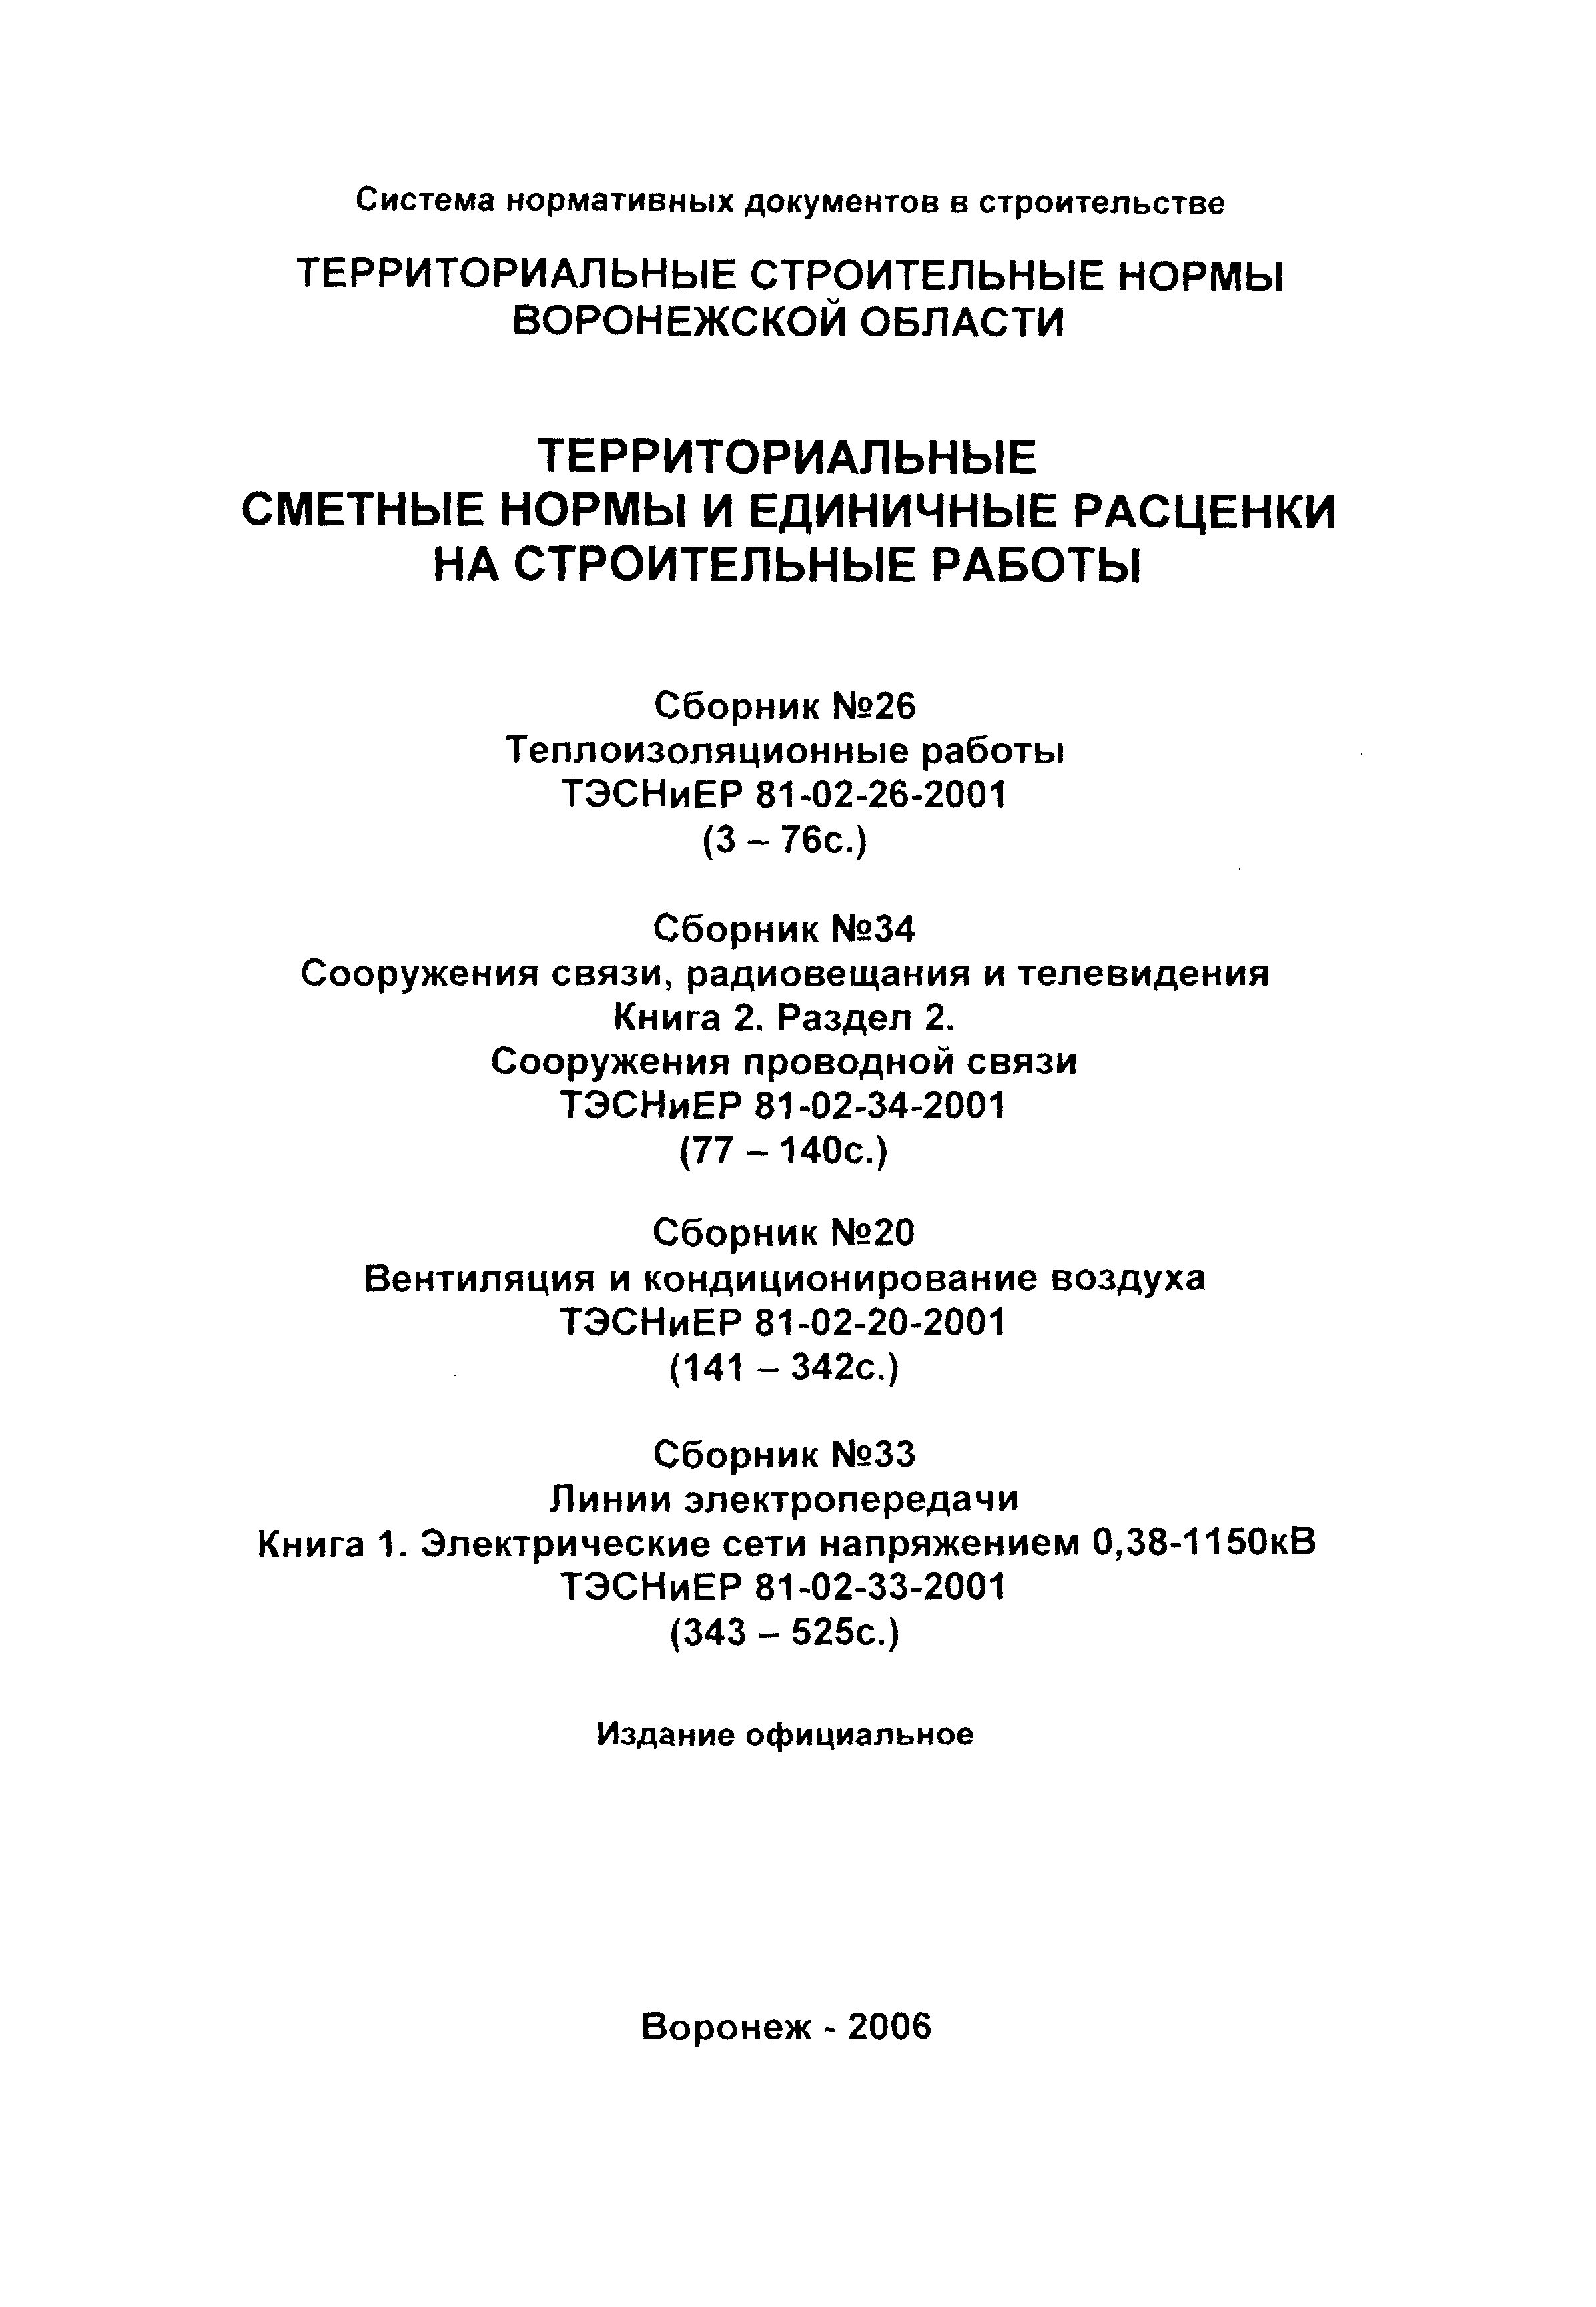 ТЭСНиЕР Воронежская область 81-02-26-2001